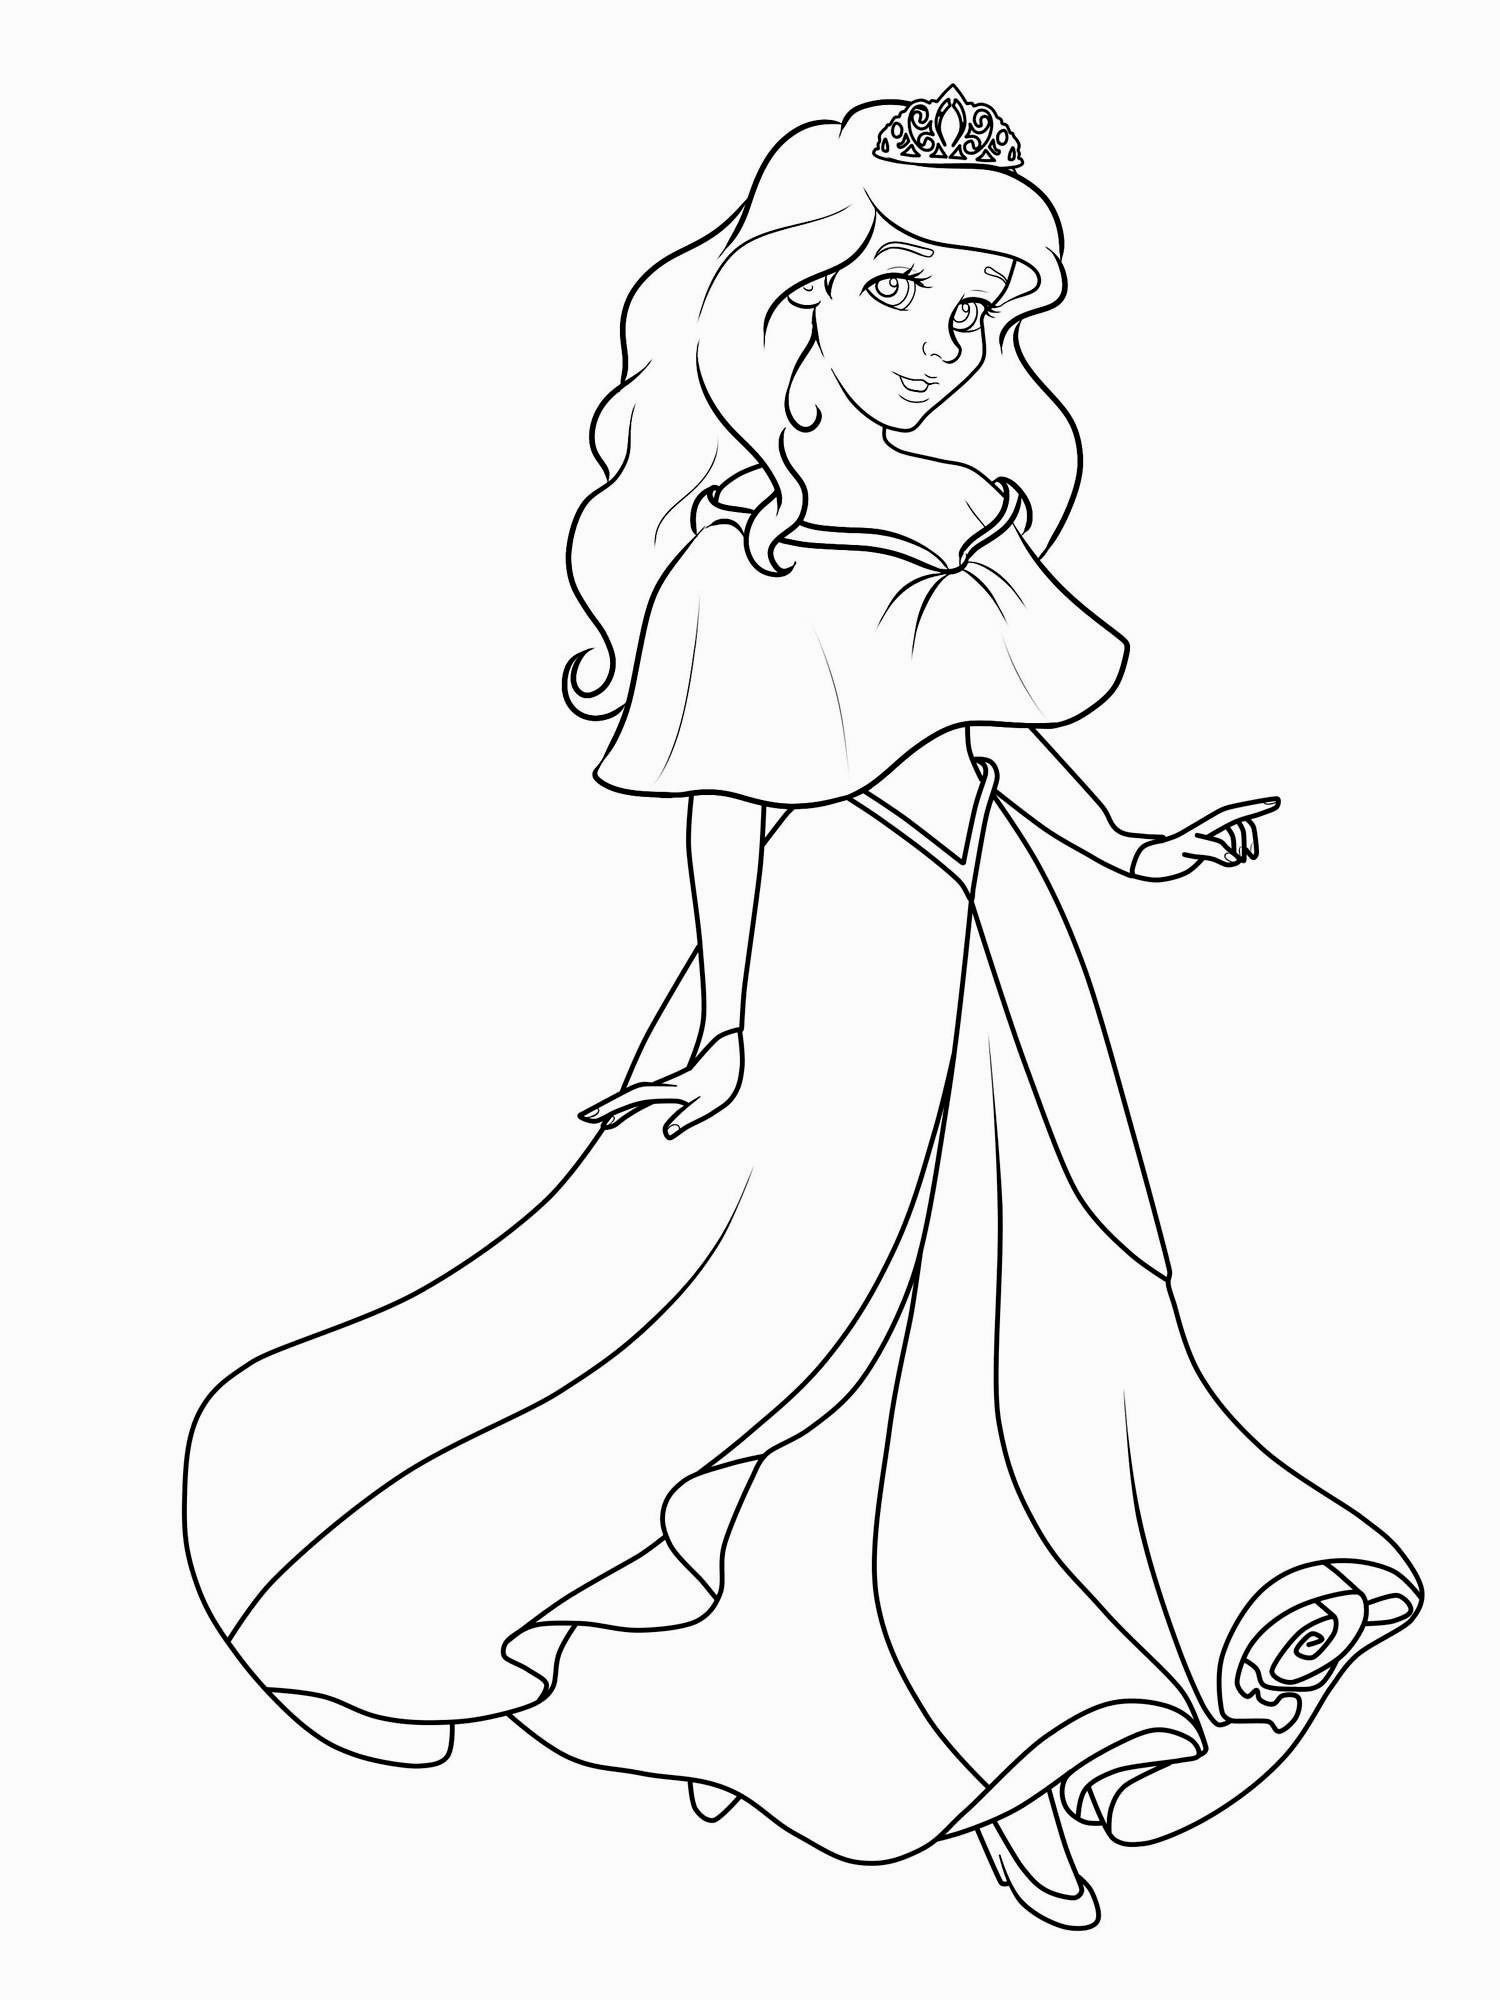 Disney Prinzessinnen Ausmalbilder
 Ausmalbilder Disney Prinzessin Belle Malvorlagen